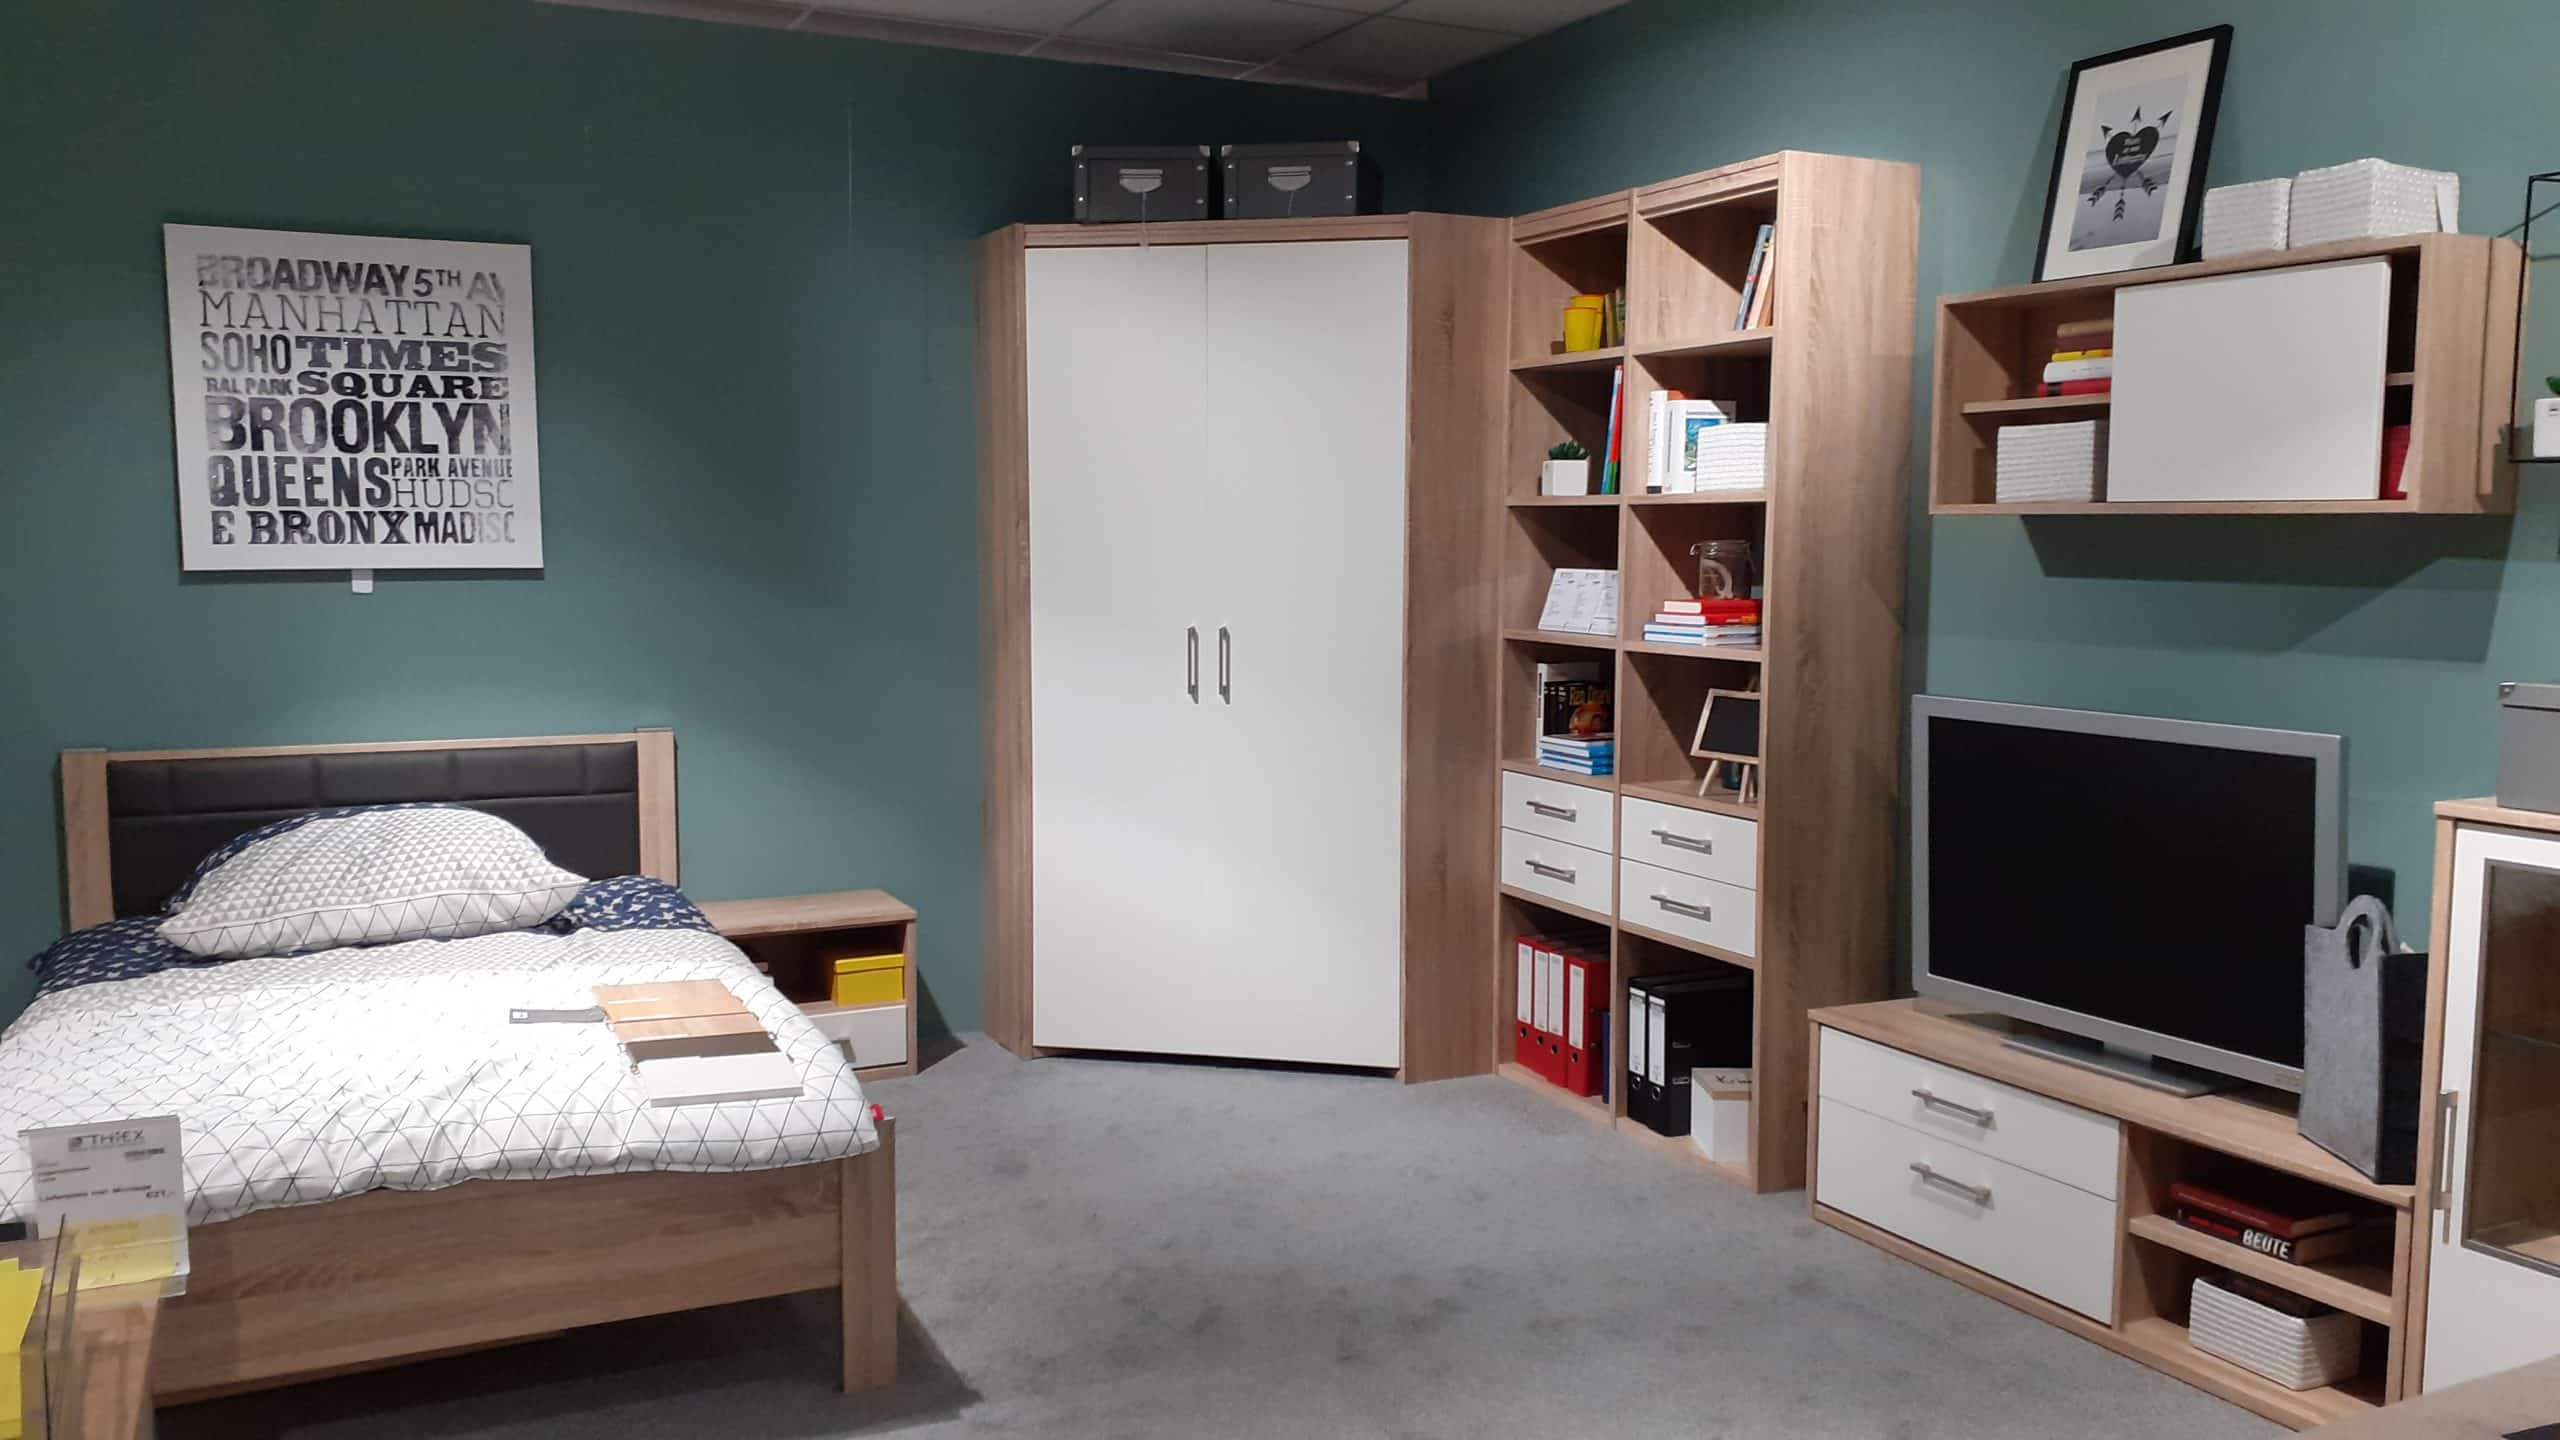 Entdecken Sie den aktuellen Abverkauf von Jugendzimmermöbeln in stilvollem Luna Eiche Sonoma Dekor im Möbelhaus Thiex. Profitieren Sie von einem Rabatt von 31% und finden Sie das perfekte Jugendzimmer für Ihr Zuhause.